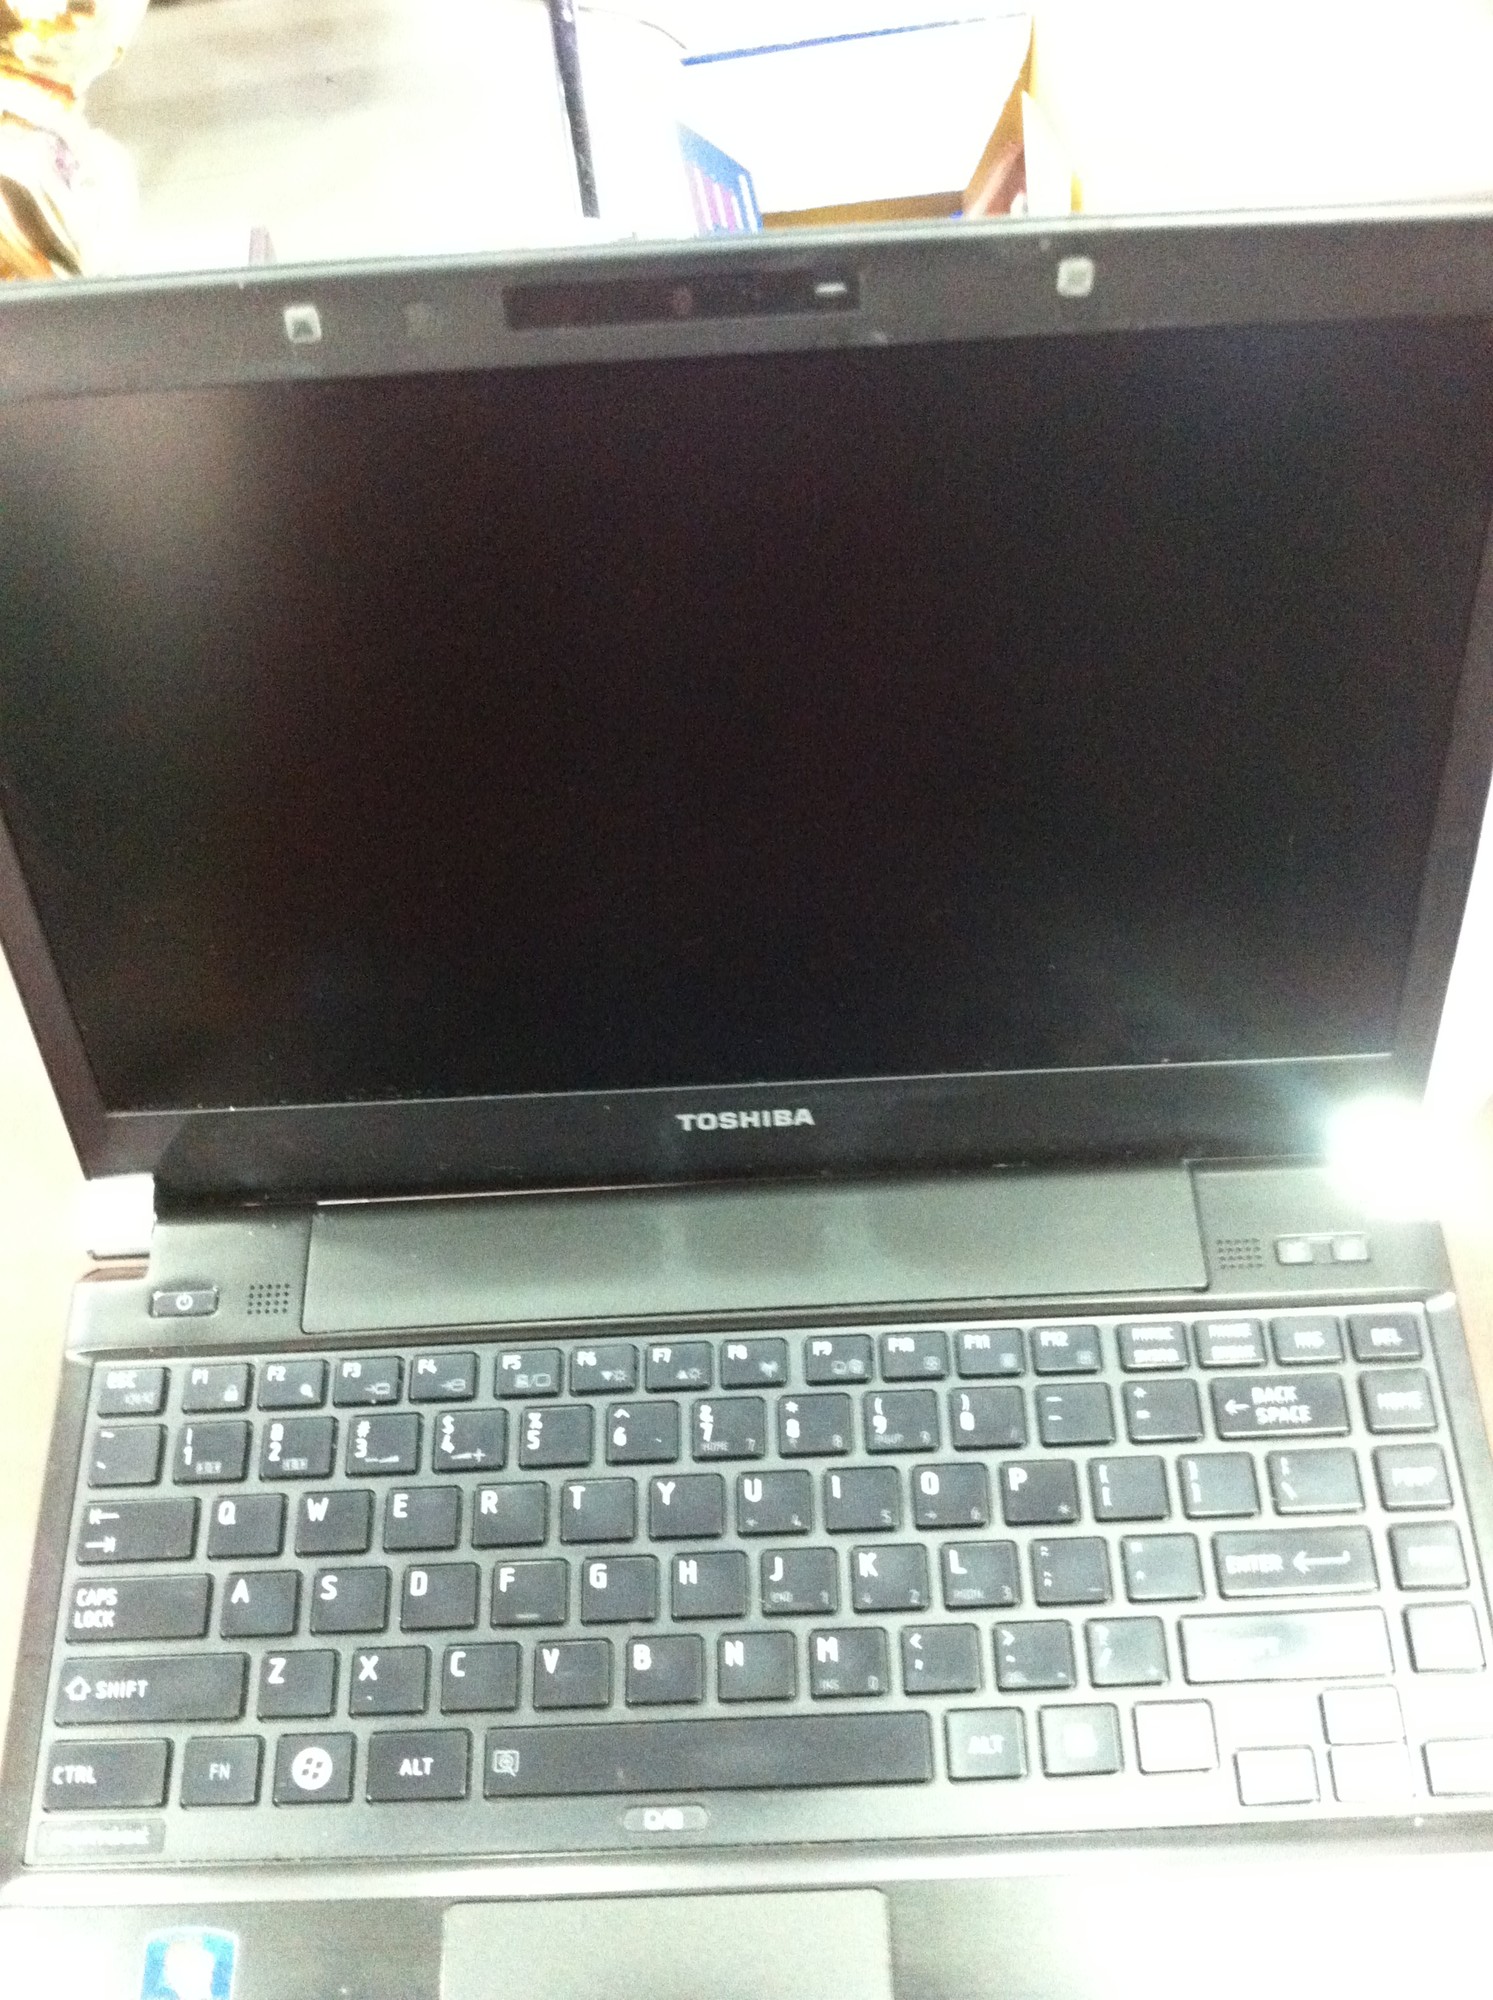 Toshiba Portege R830 - Giá 6.7 triệu - Dòng laptop cao cấp, siêu bền, siêu nhẹ 1,4 kg . 14358332252413187